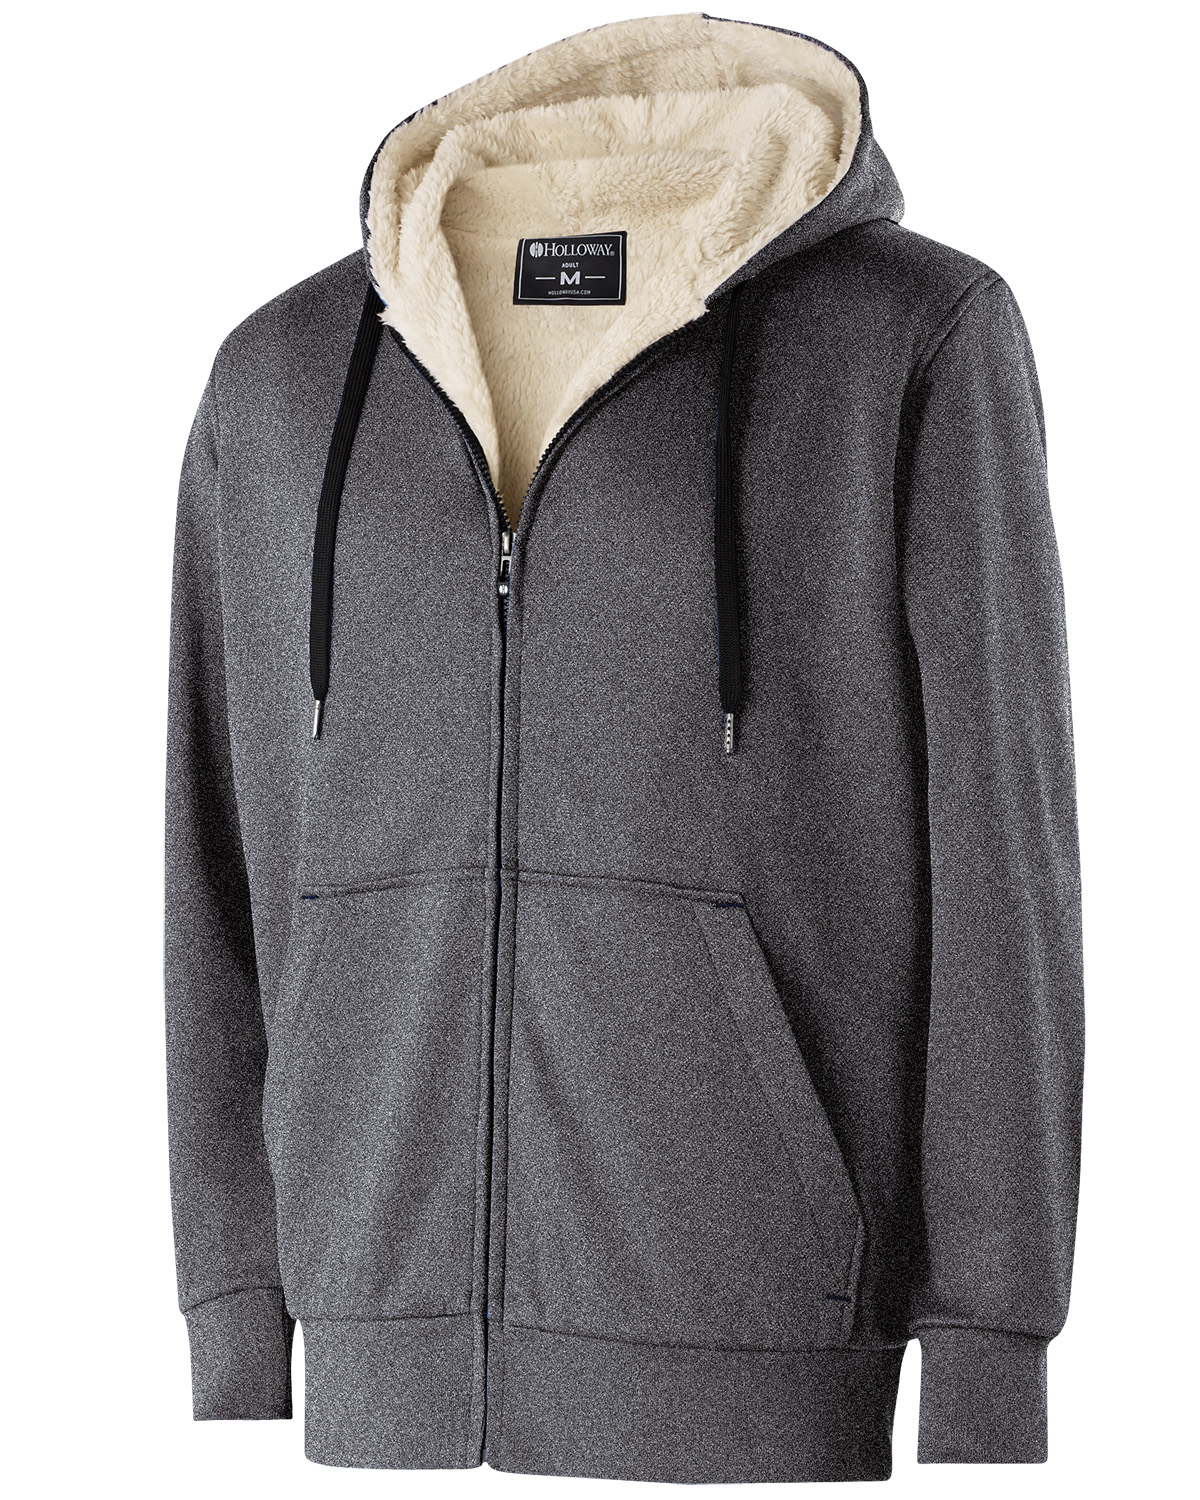 Buy > mens sherpa hoodie 3xl > in stock